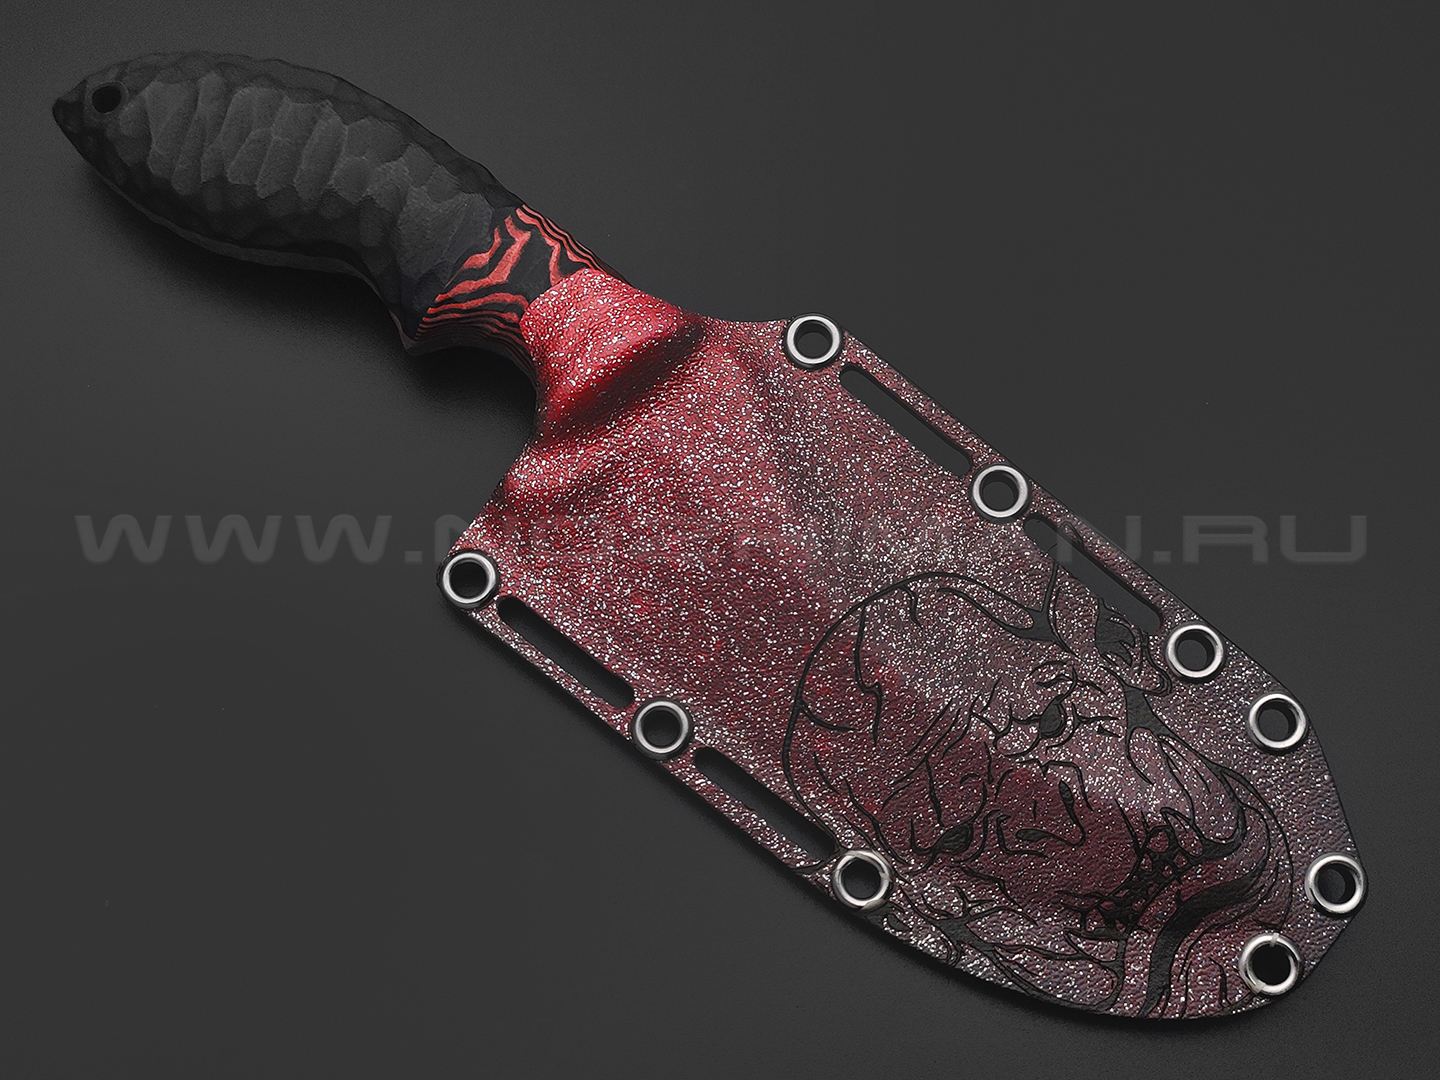 Волчий Век нож Кондрат 12 Custom Orc Edition сталь 95Х18 WA травление, рукоять G10 black & red